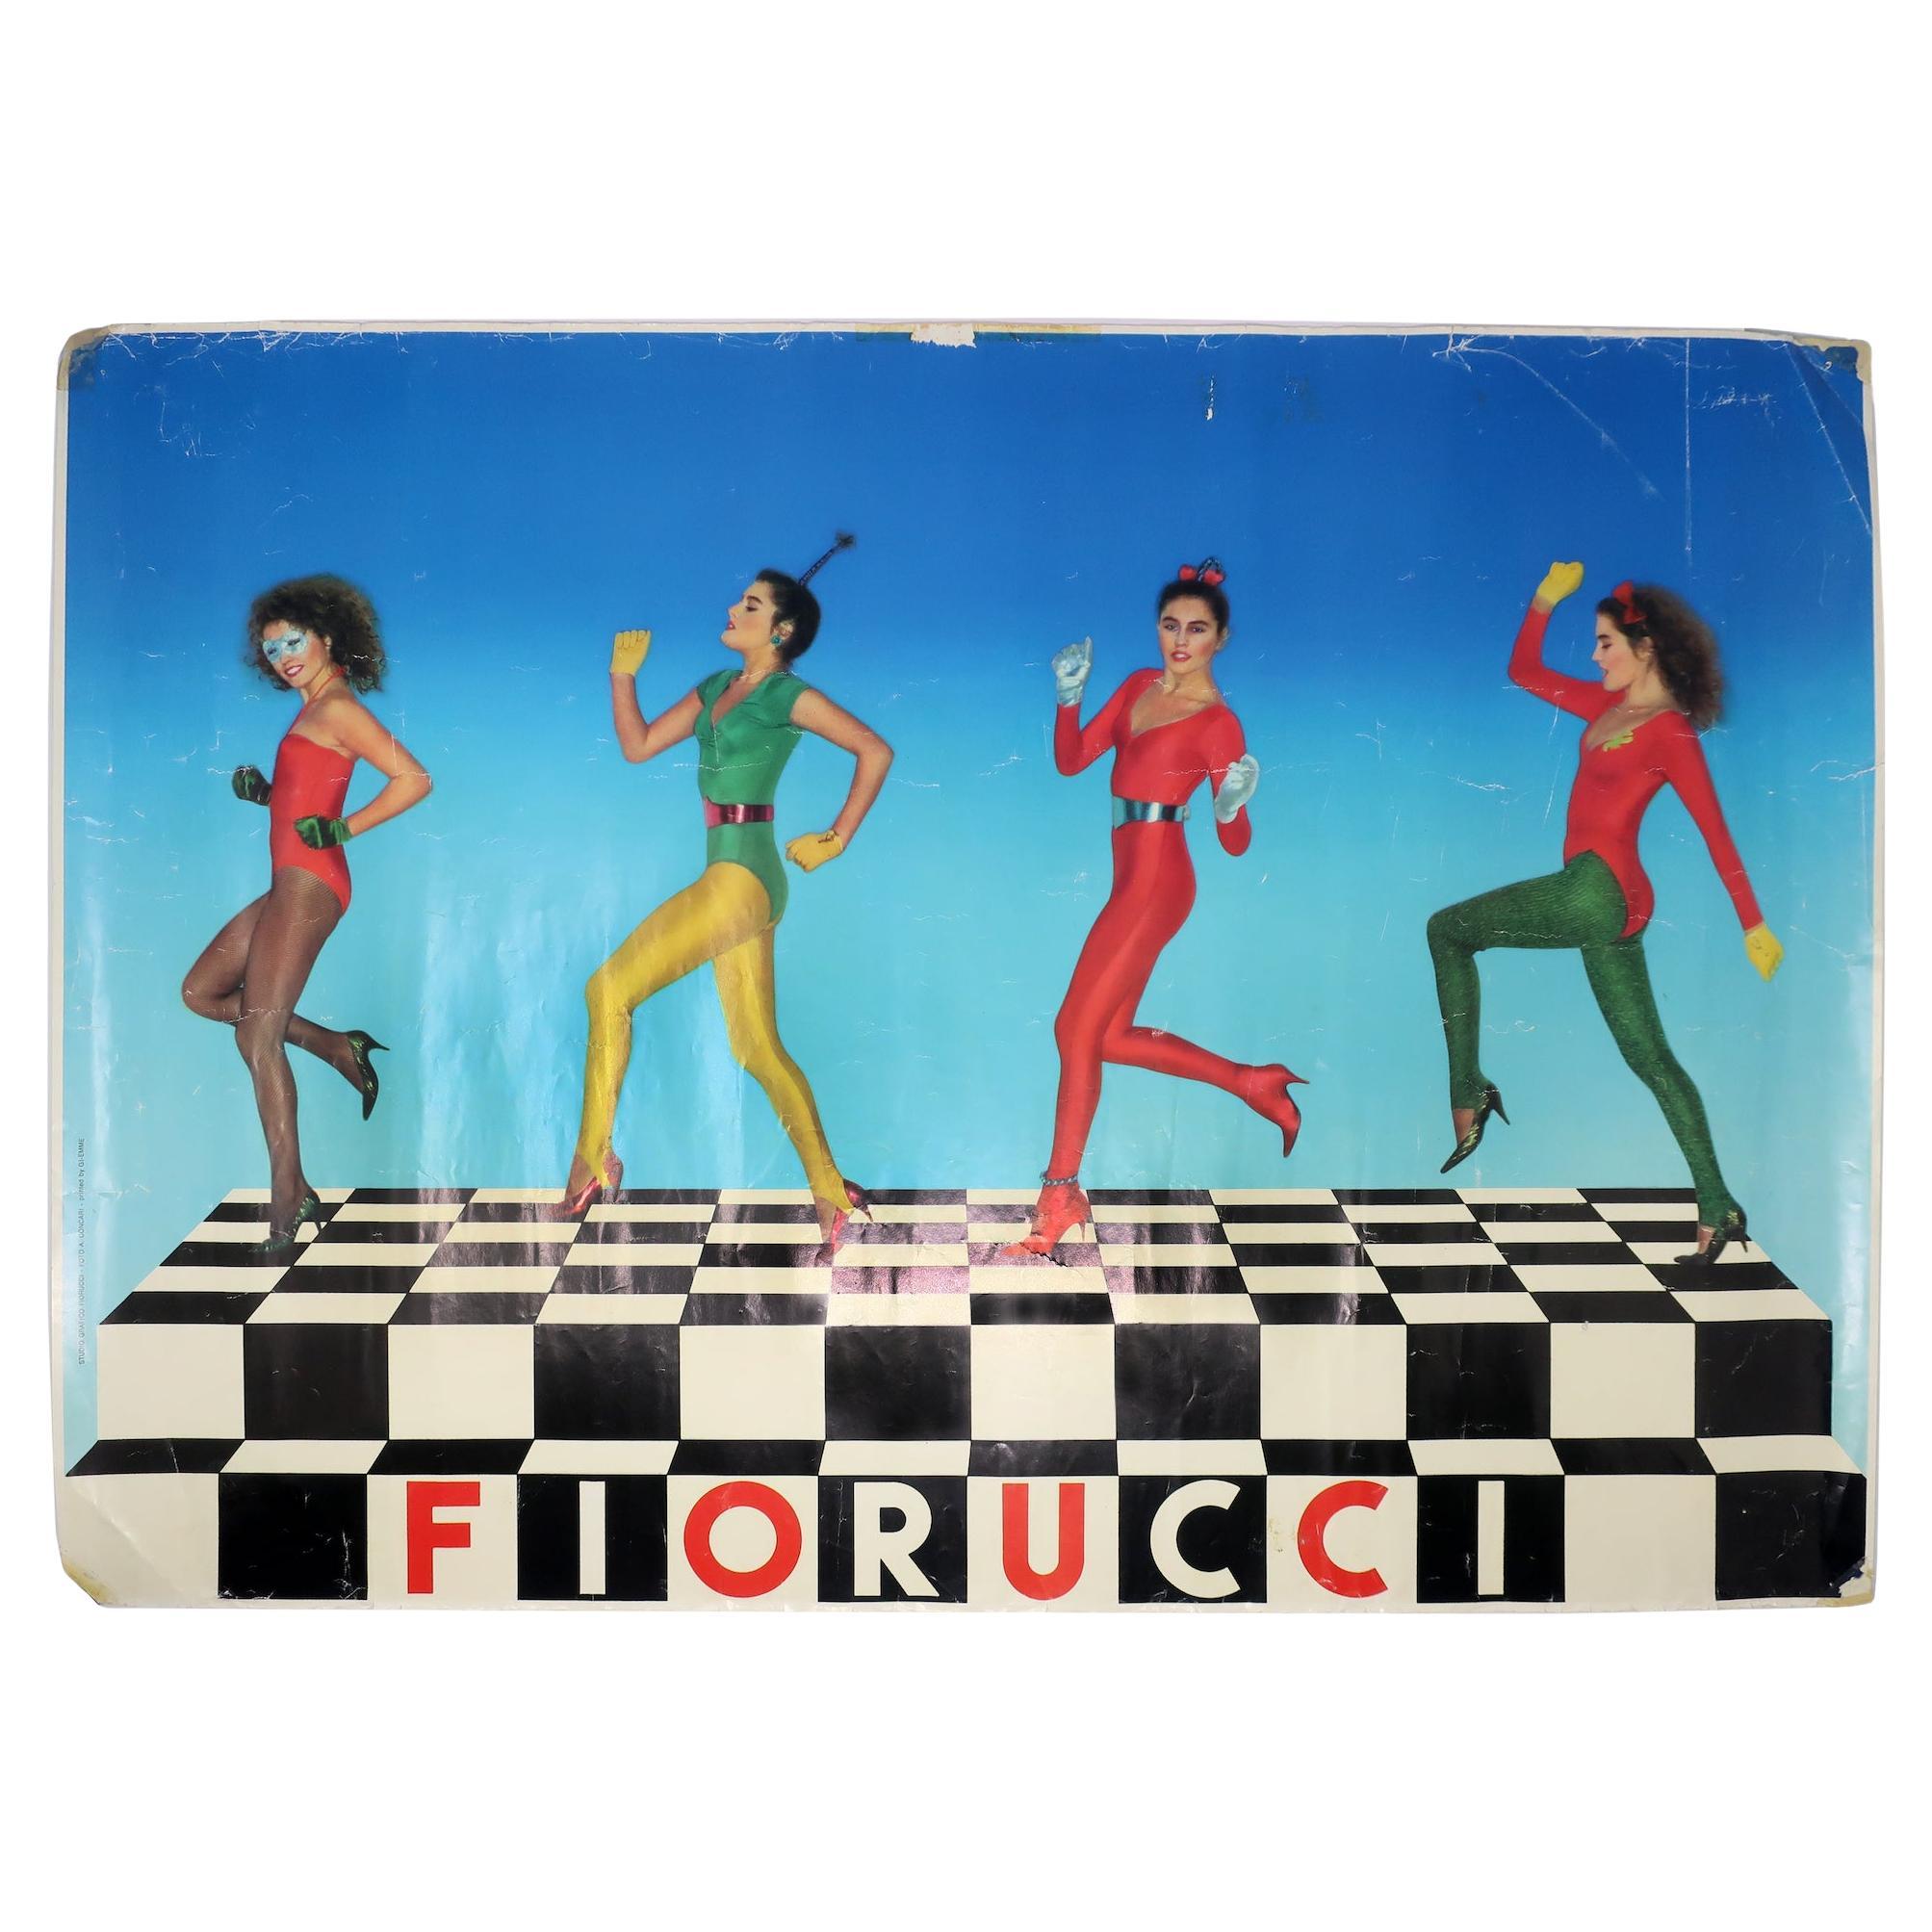 Vintage Fiorucci-Poster, tanzende Damen auf Schachbrett, Vintage